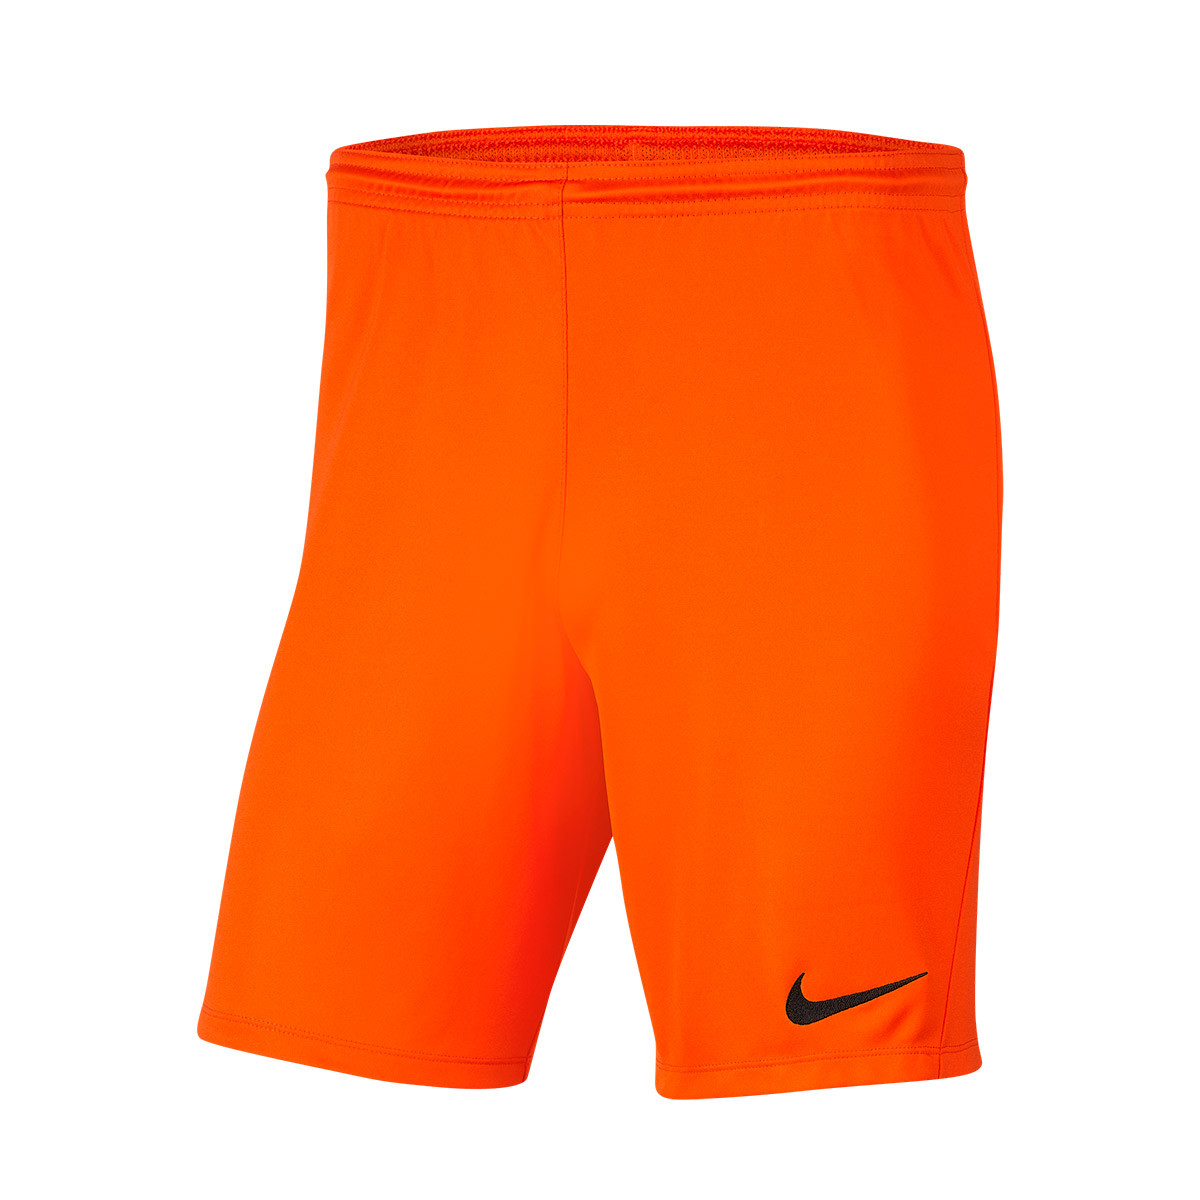 nike shorts black and orange